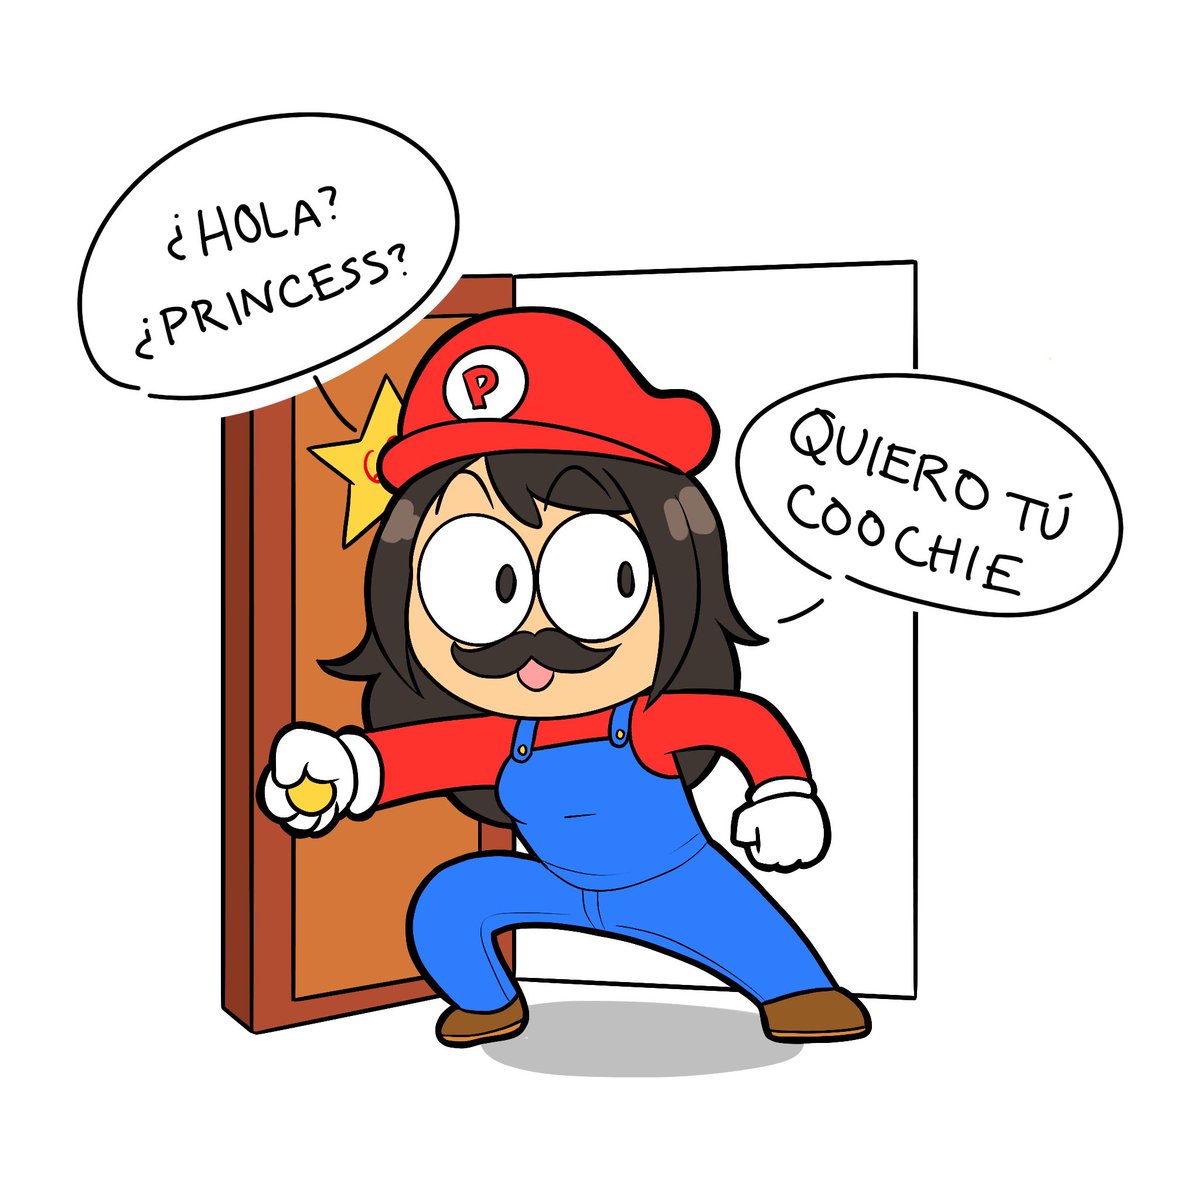 Happy Mario day 